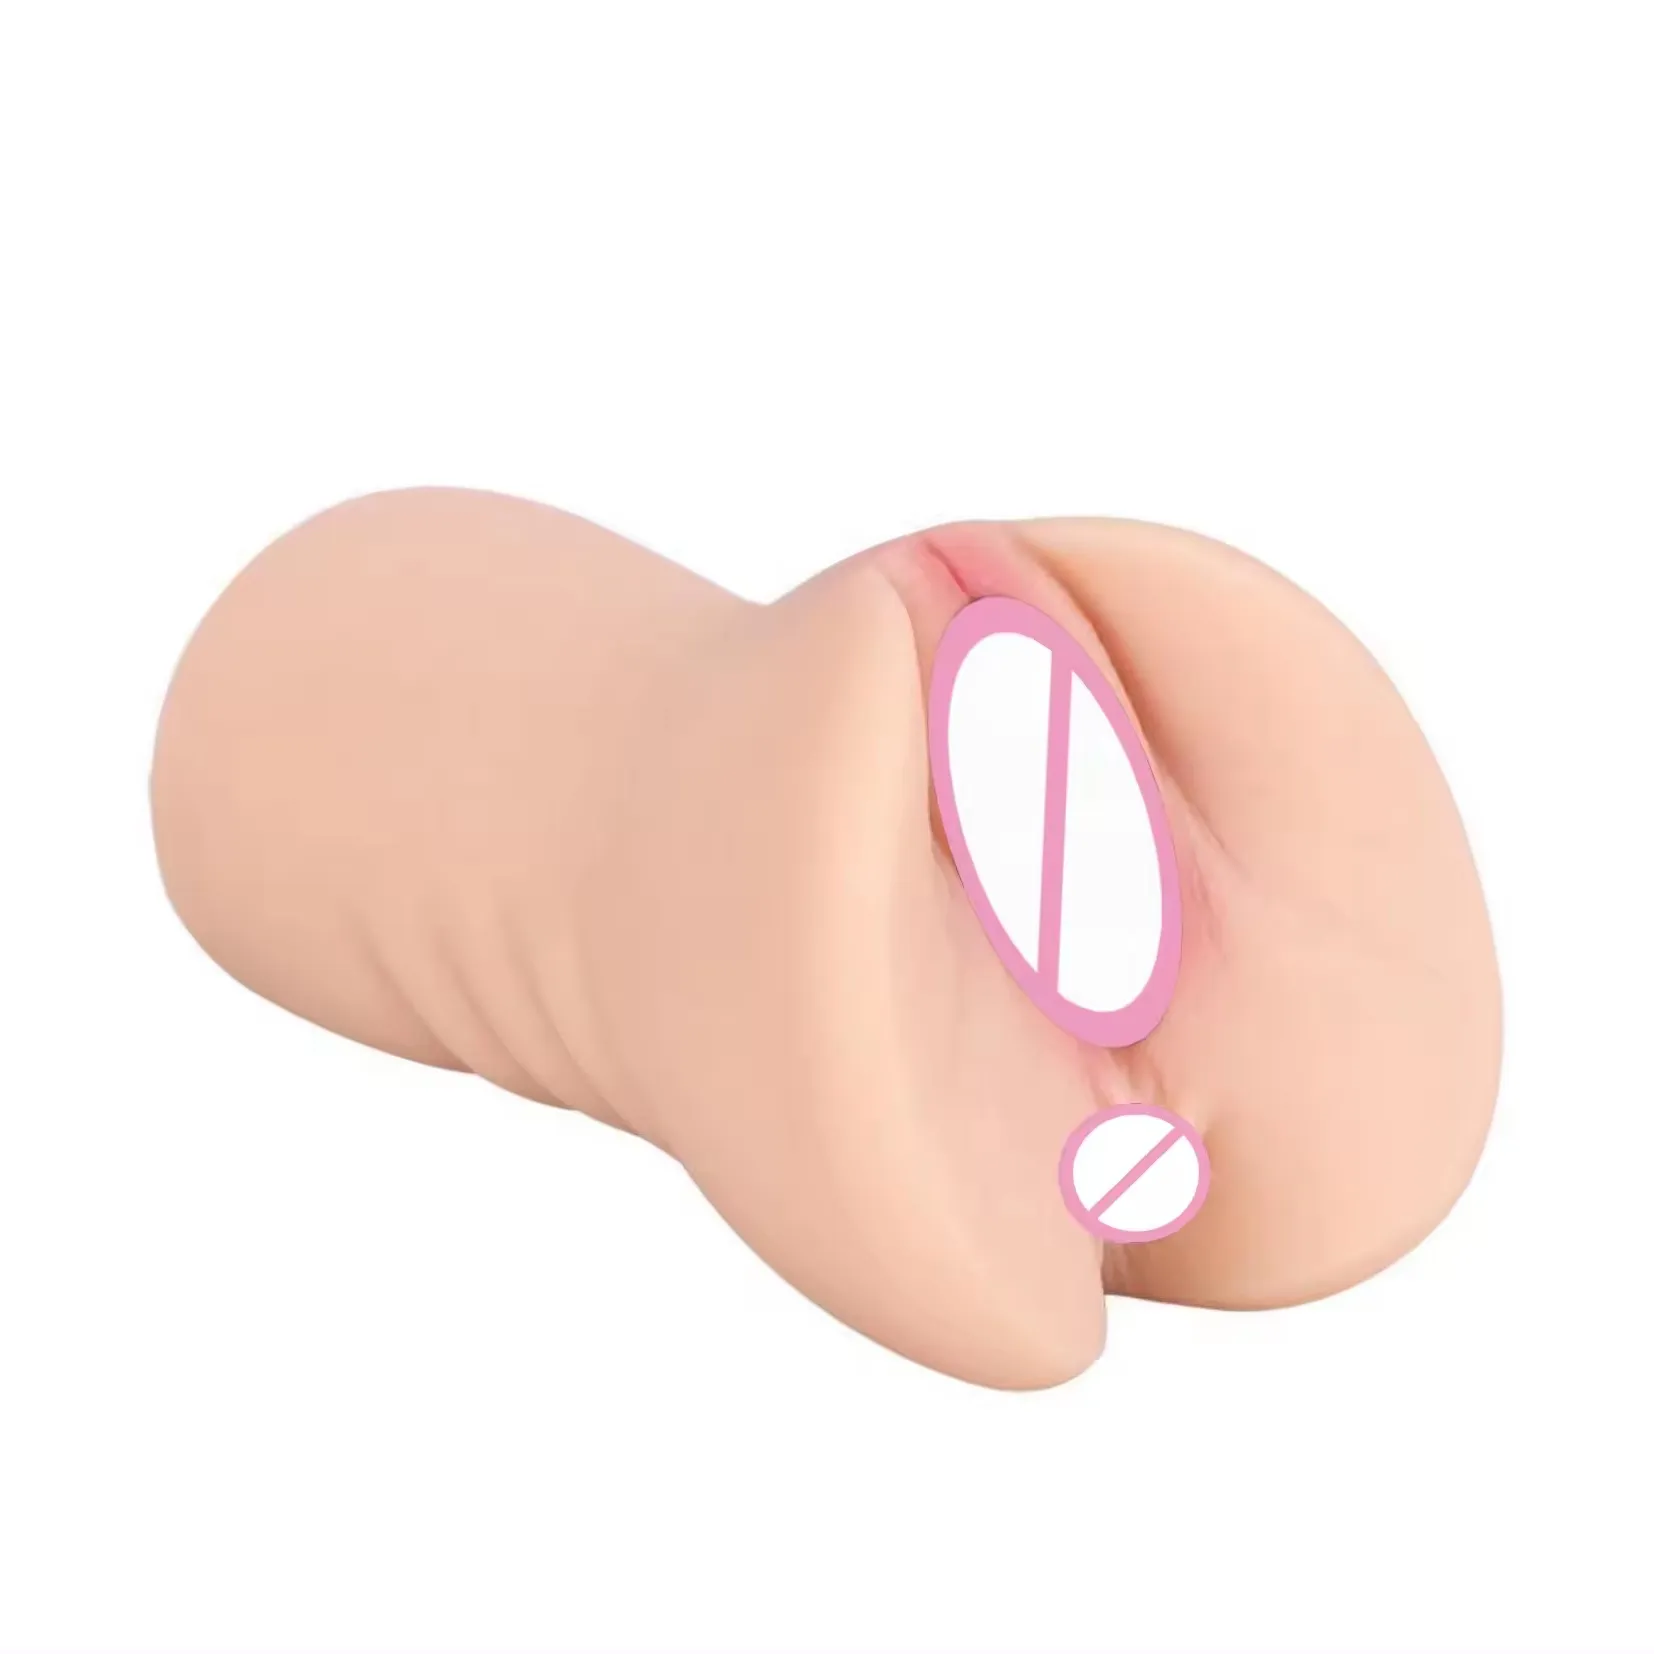 Brinquedo de silicone para vagina, boneco anal de silicone para adultos e adultos, vagina apertada com textura gorda, anal para homens